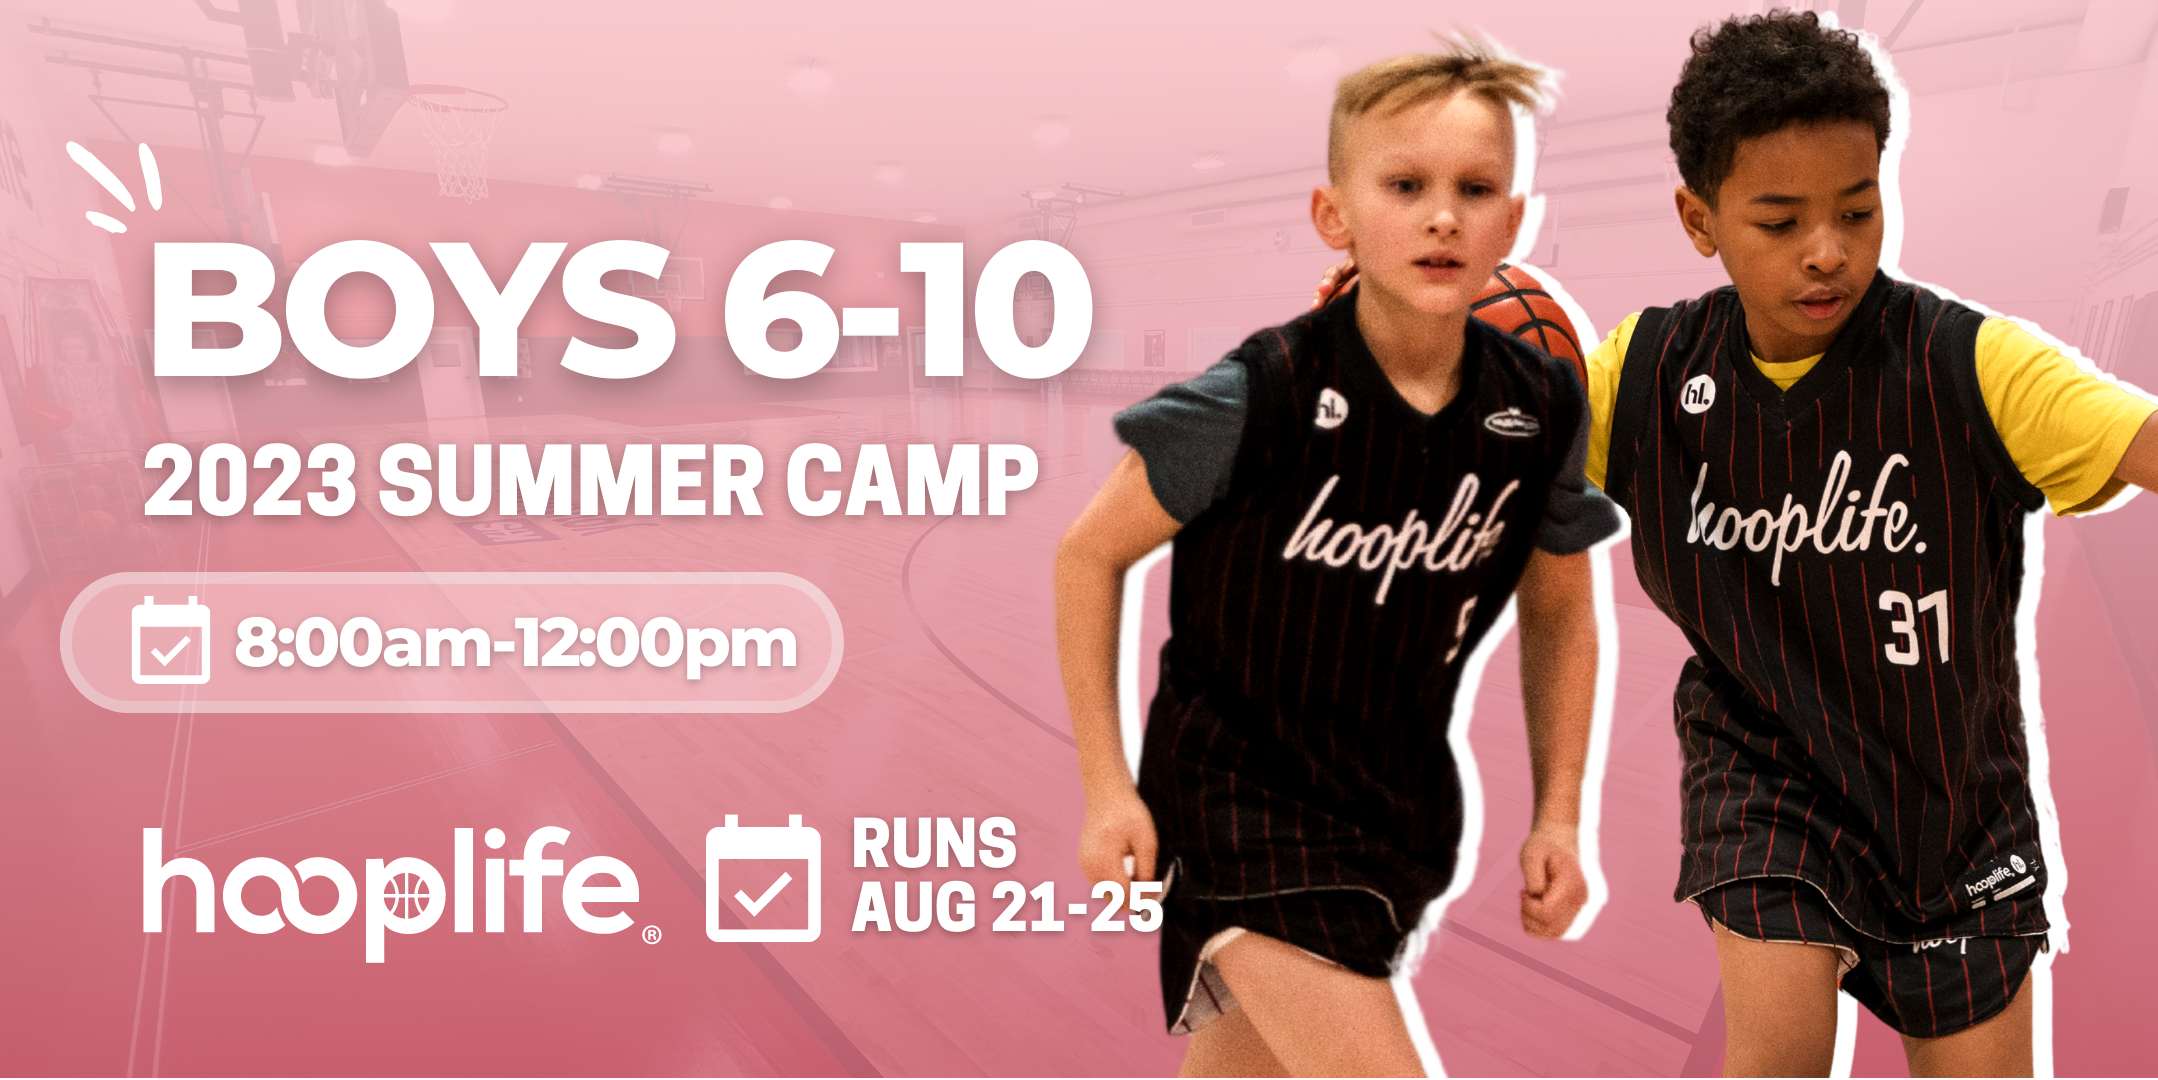 Boys 6-10 Summer Camp | Aug 21-25